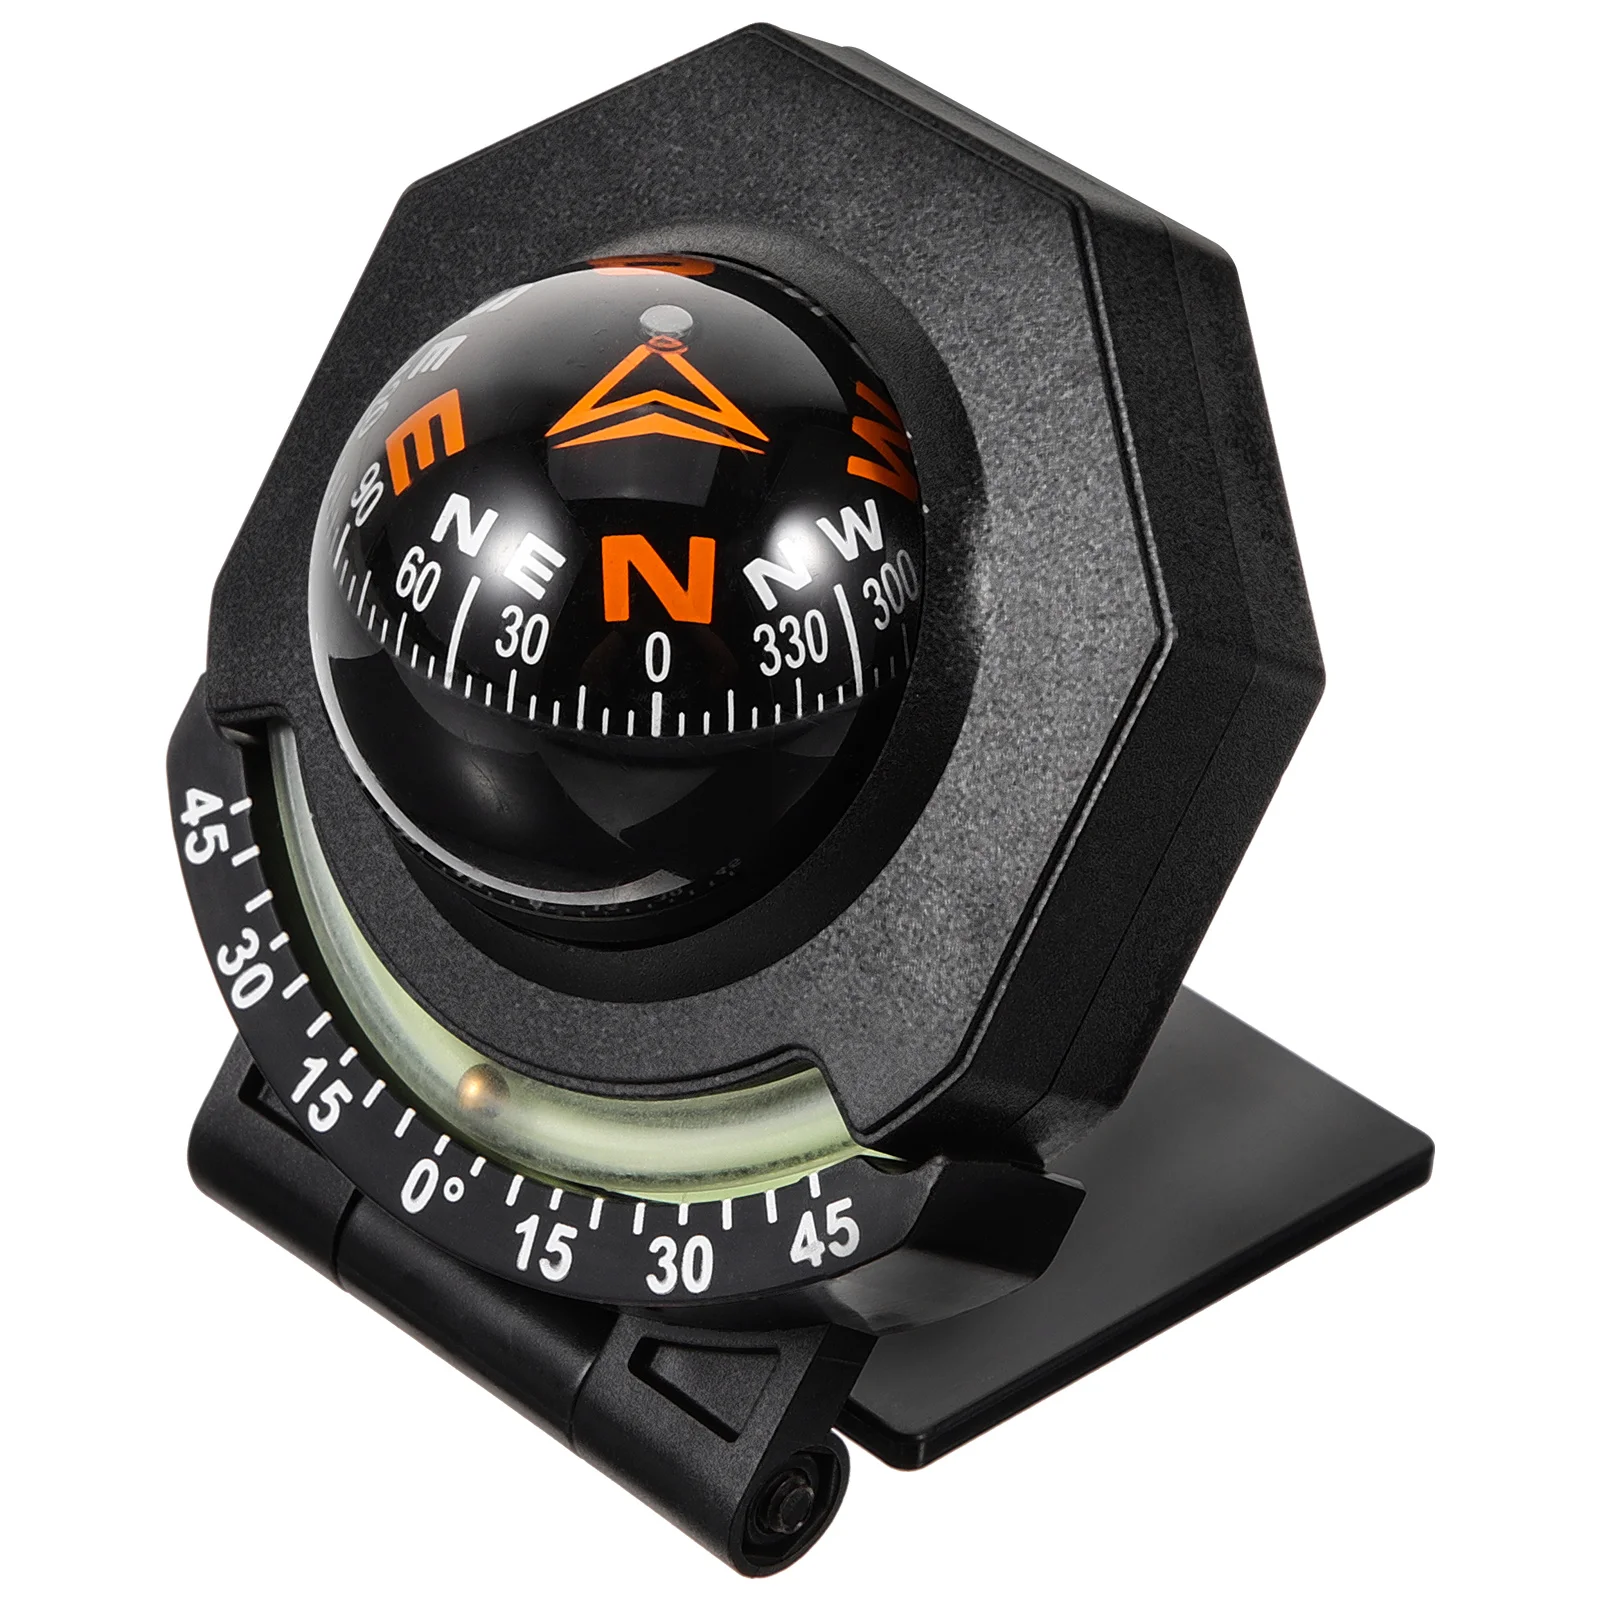 

Boat Compass Surface Mount Dash Auto Marine Automotive Car Dashboard Ball Decor